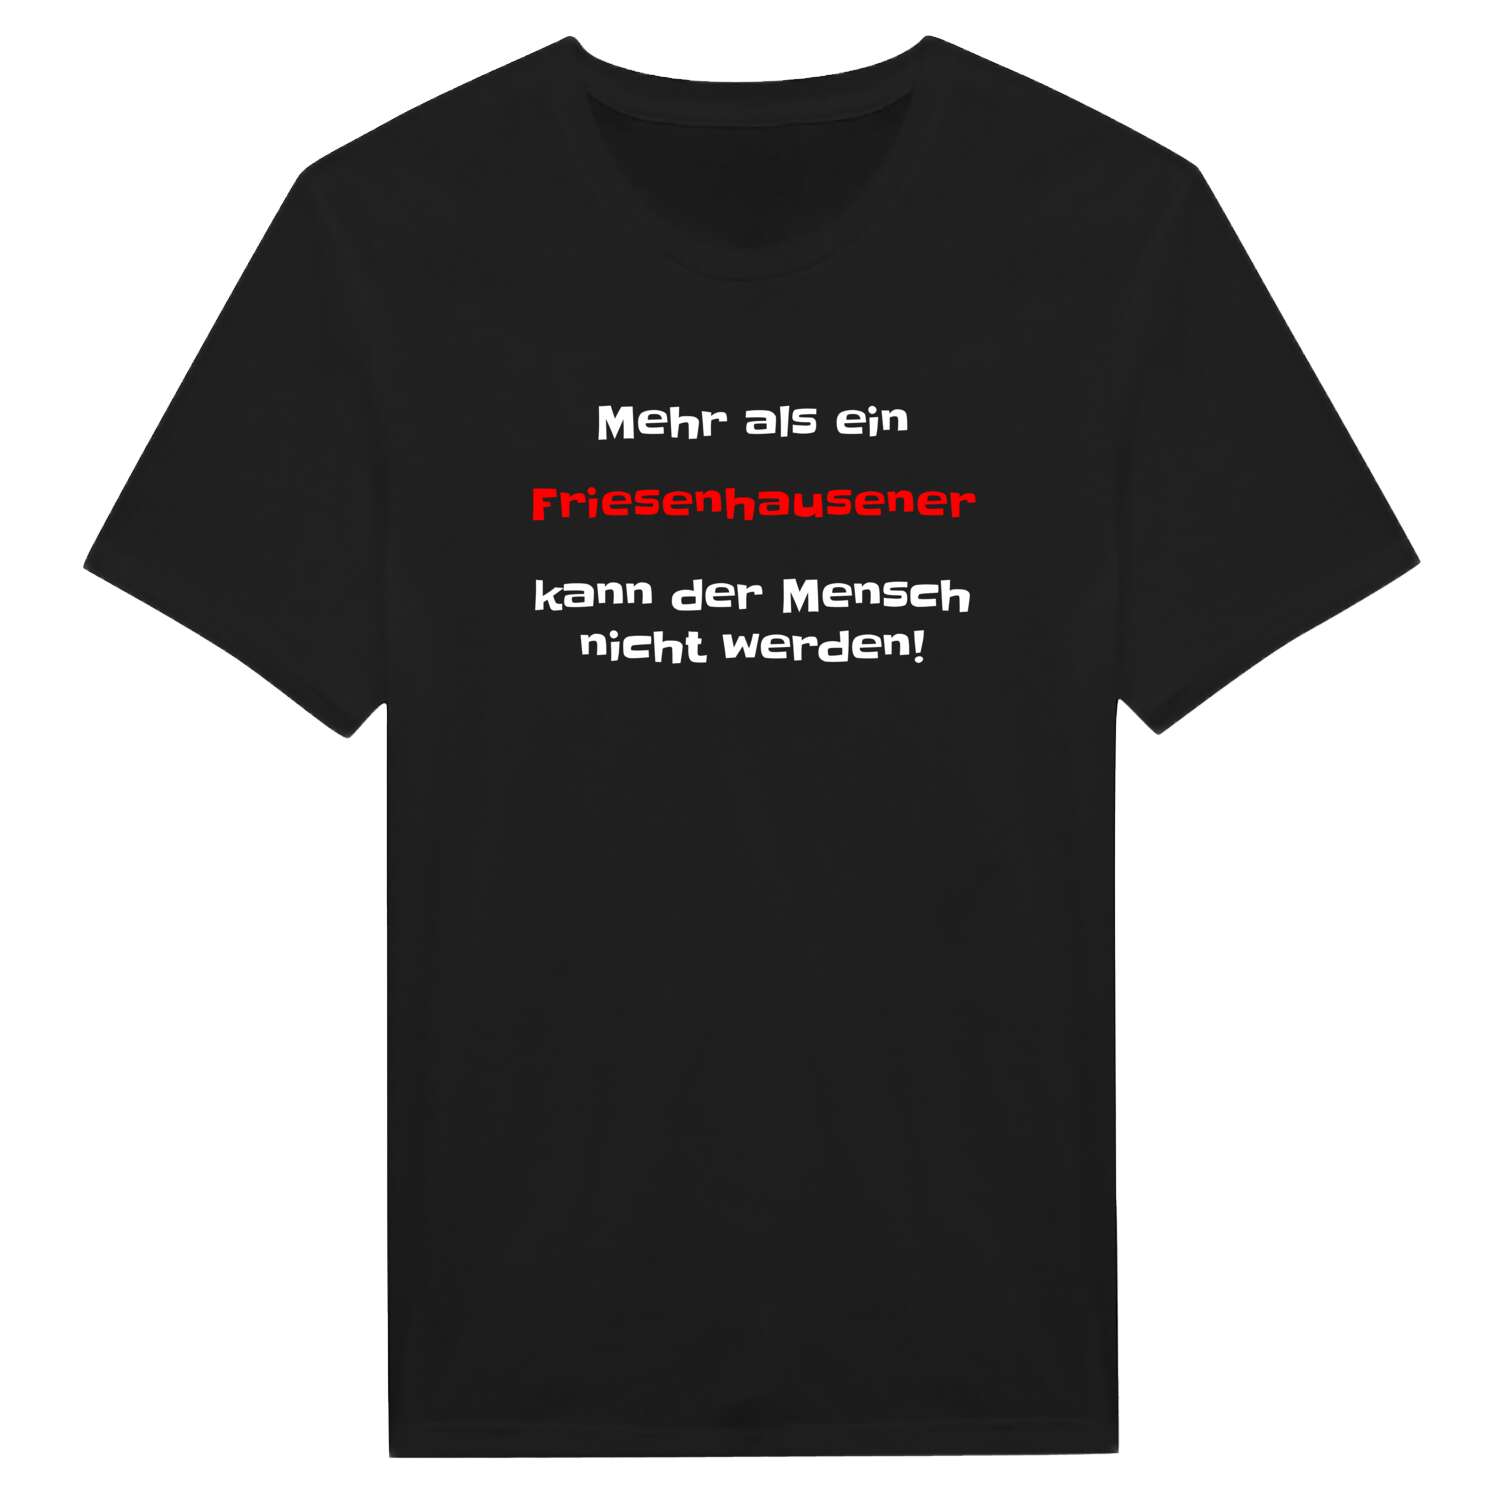 Friesenhausen T-Shirt »Mehr als ein«